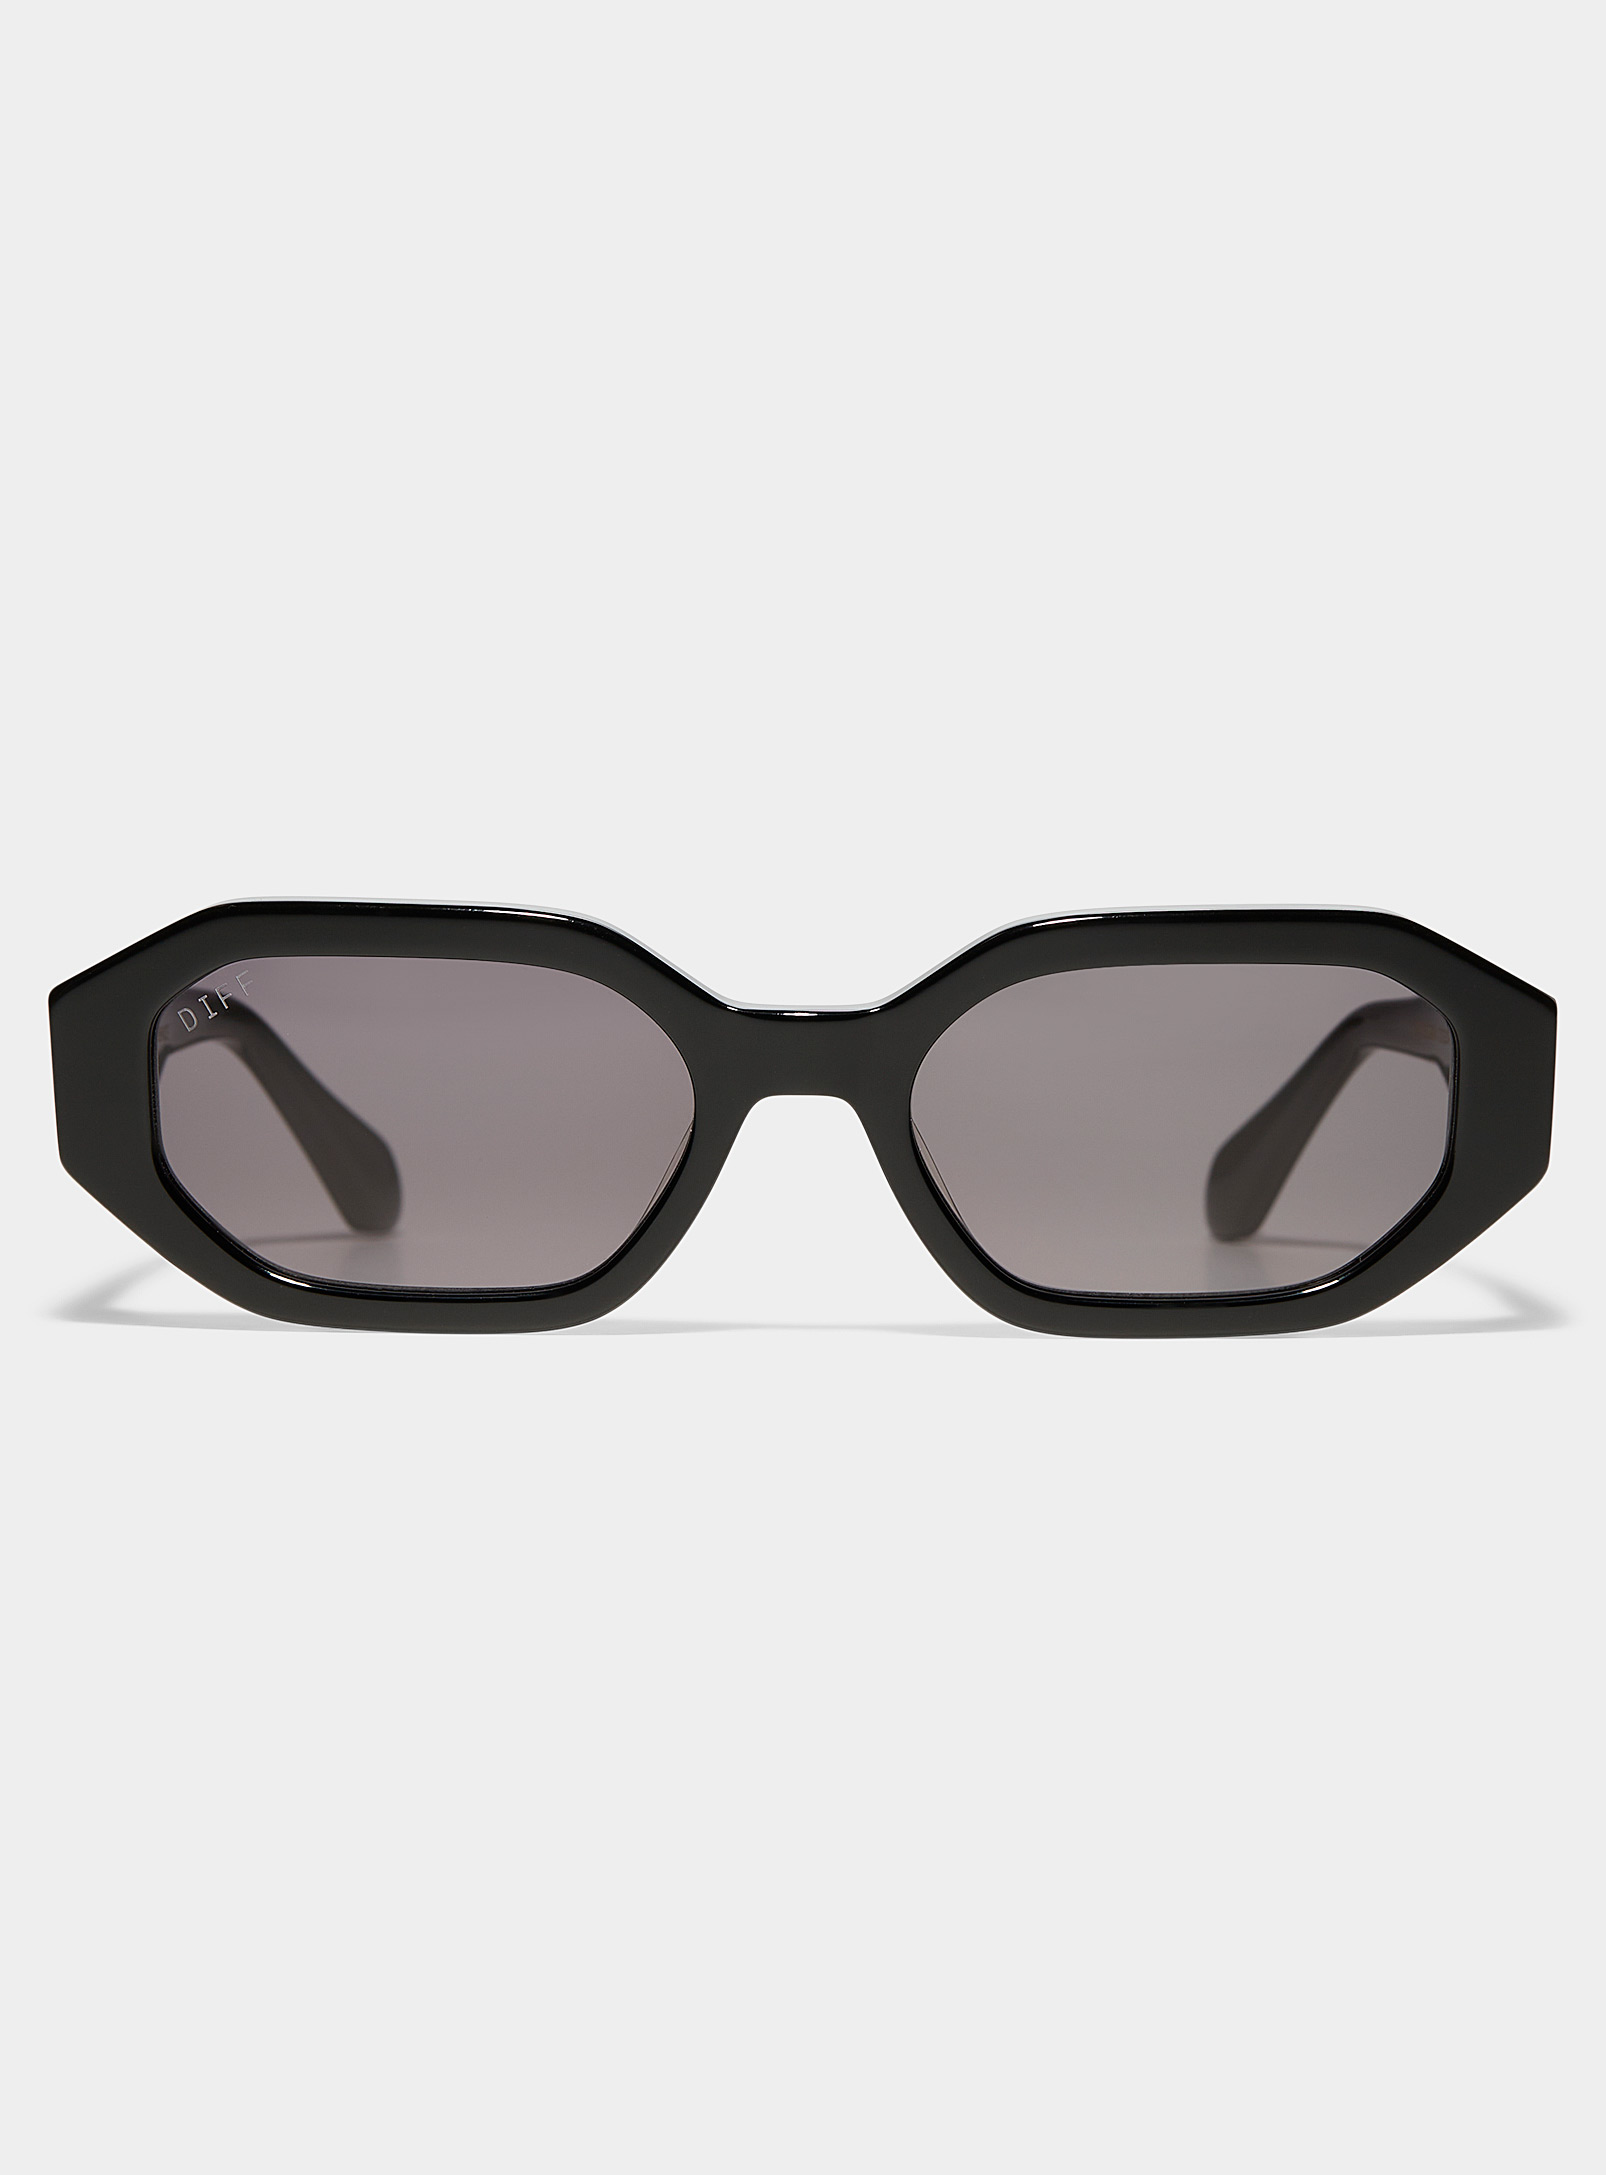 DIFF - Women's Allegra angular sunglasses